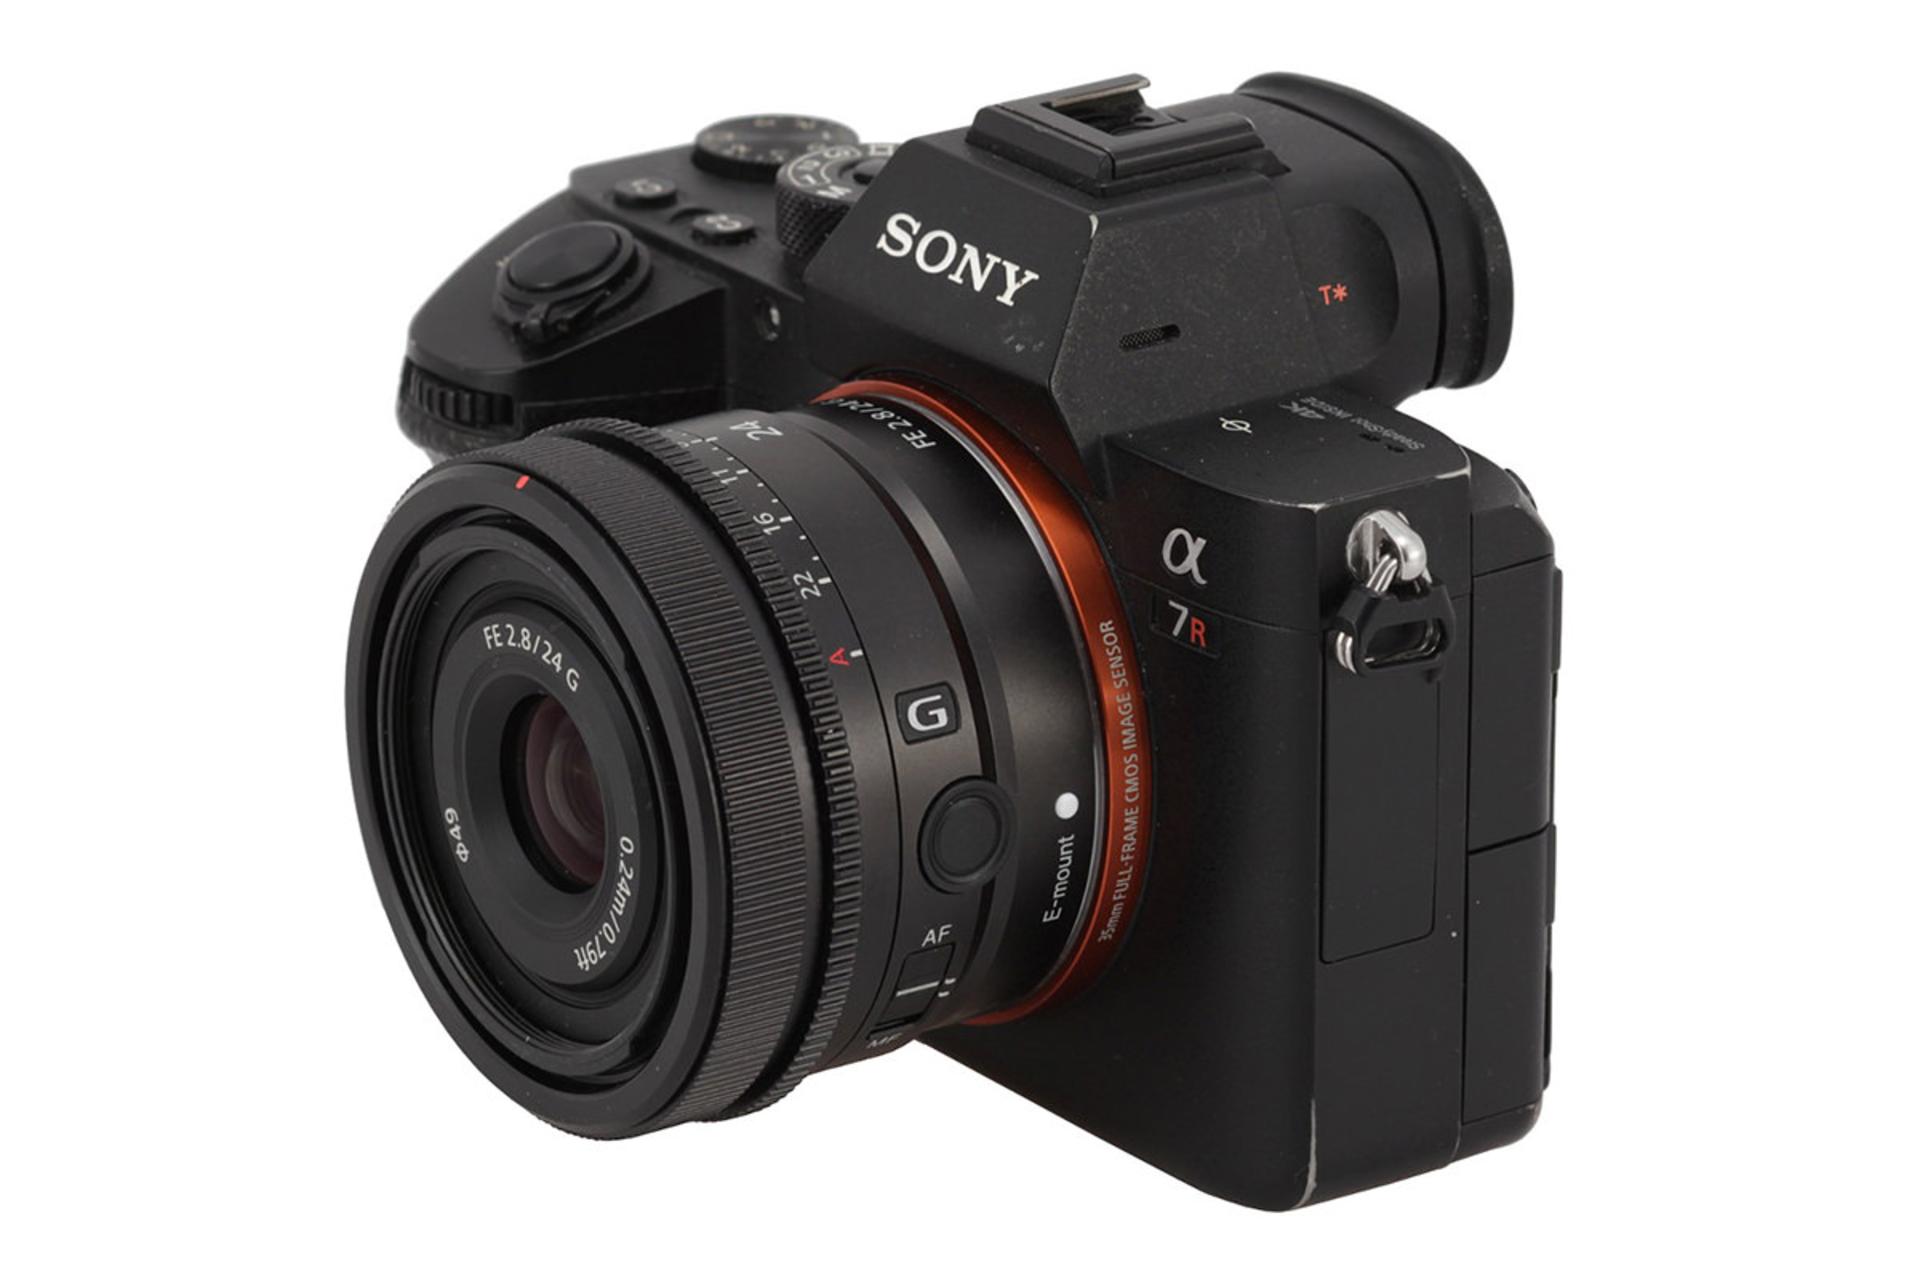 لنز سونی FE 24mm F2.8 G بر روی دوربین سونی